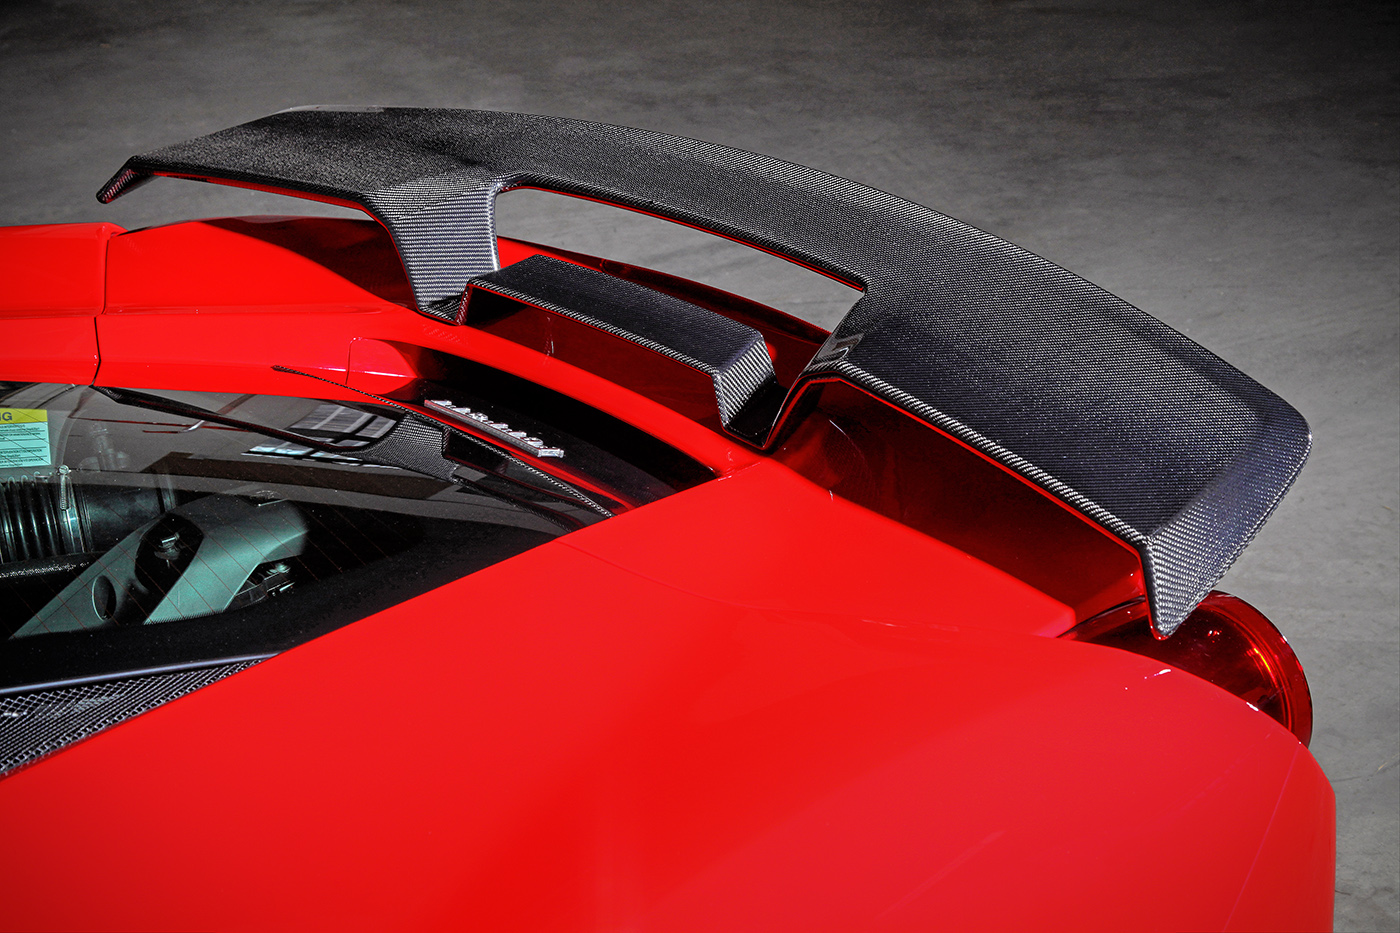 
Một cánh lướt gió cố định cỡ lớn là trang bị mới cho siêu xe Ferrari 488 GTB. Chi tiết này móc hầu bao của chủ nhân khoảng 176 triệu Đồng.
